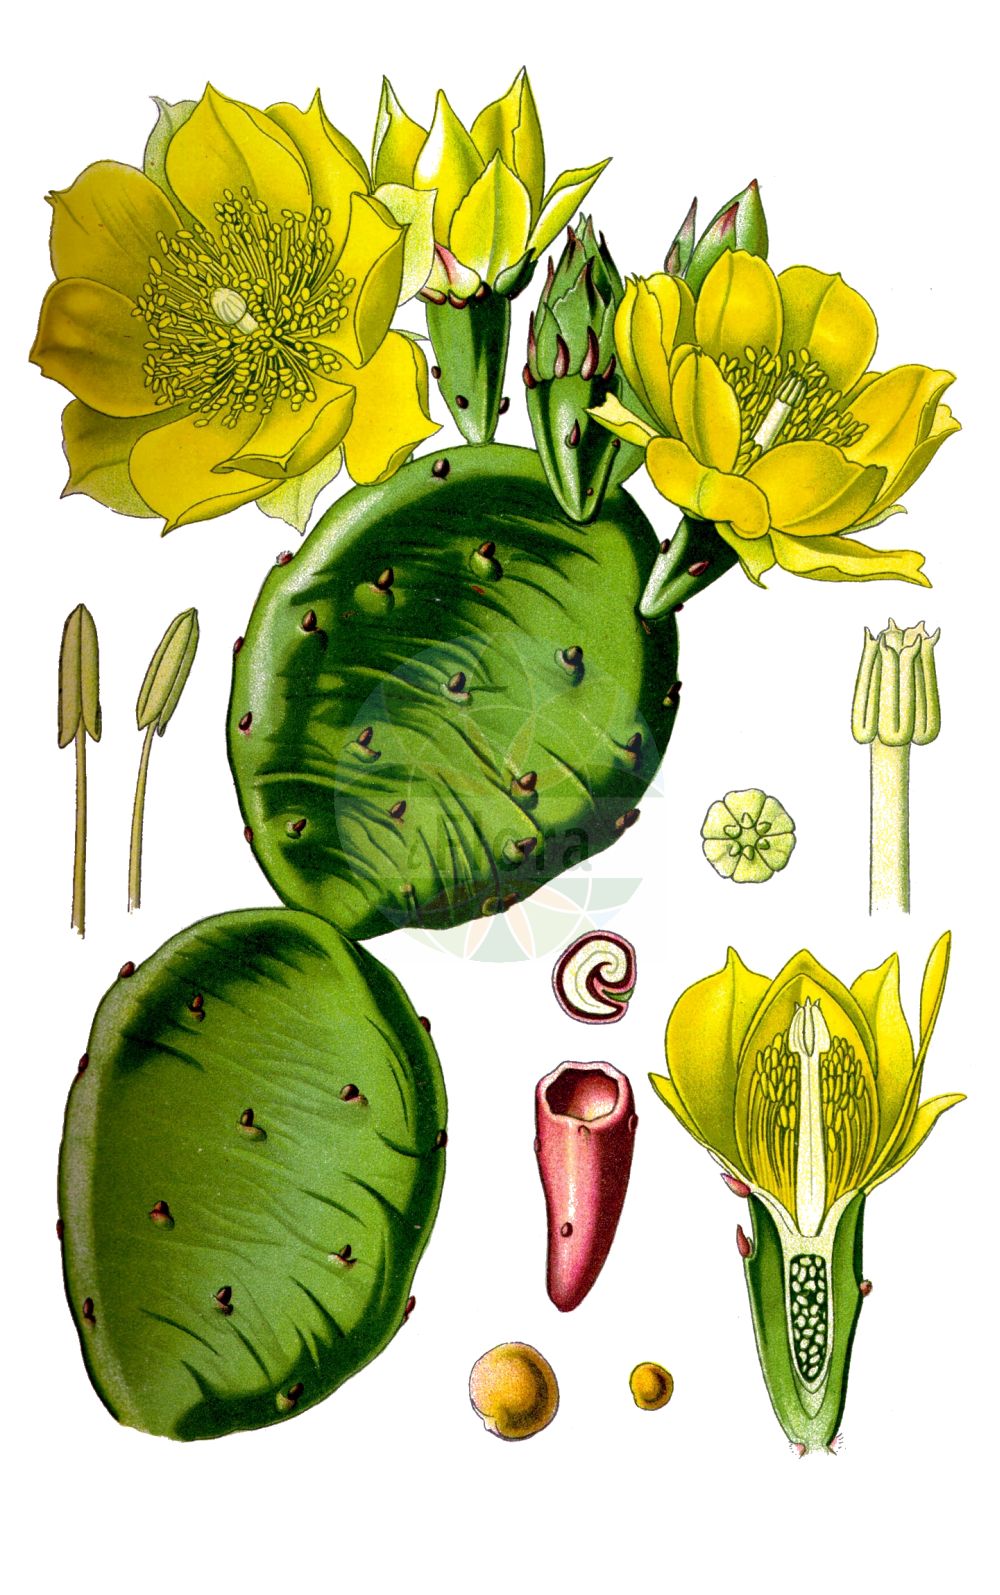 Historische Abbildung von Opuntia humifusa (Eastern Prickly Pear). Das Bild zeigt Blatt, Bluete, Frucht und Same. ---- Historical Drawing of Opuntia humifusa (Eastern Prickly Pear). The image is showing leaf, flower, fruit and seed.(Opuntia humifusa,Eastern Prickly Pear,Cactus humifusus,Opuntia ammophila,Opuntia humifusa,Opuntia nana,Opuntia rafinesquii,Eastern Prickly Pear,Devil's-tongue,Low Prickly Pear,Prostrate Cactus,Spreading Prickly Pear,Opuntia,Opuntie,Pricklypear,Cactaceae,Kakteengewächse,Blatt,Bluete,Frucht,Same,leaf,flower,fruit,seed,Thomé (1885))